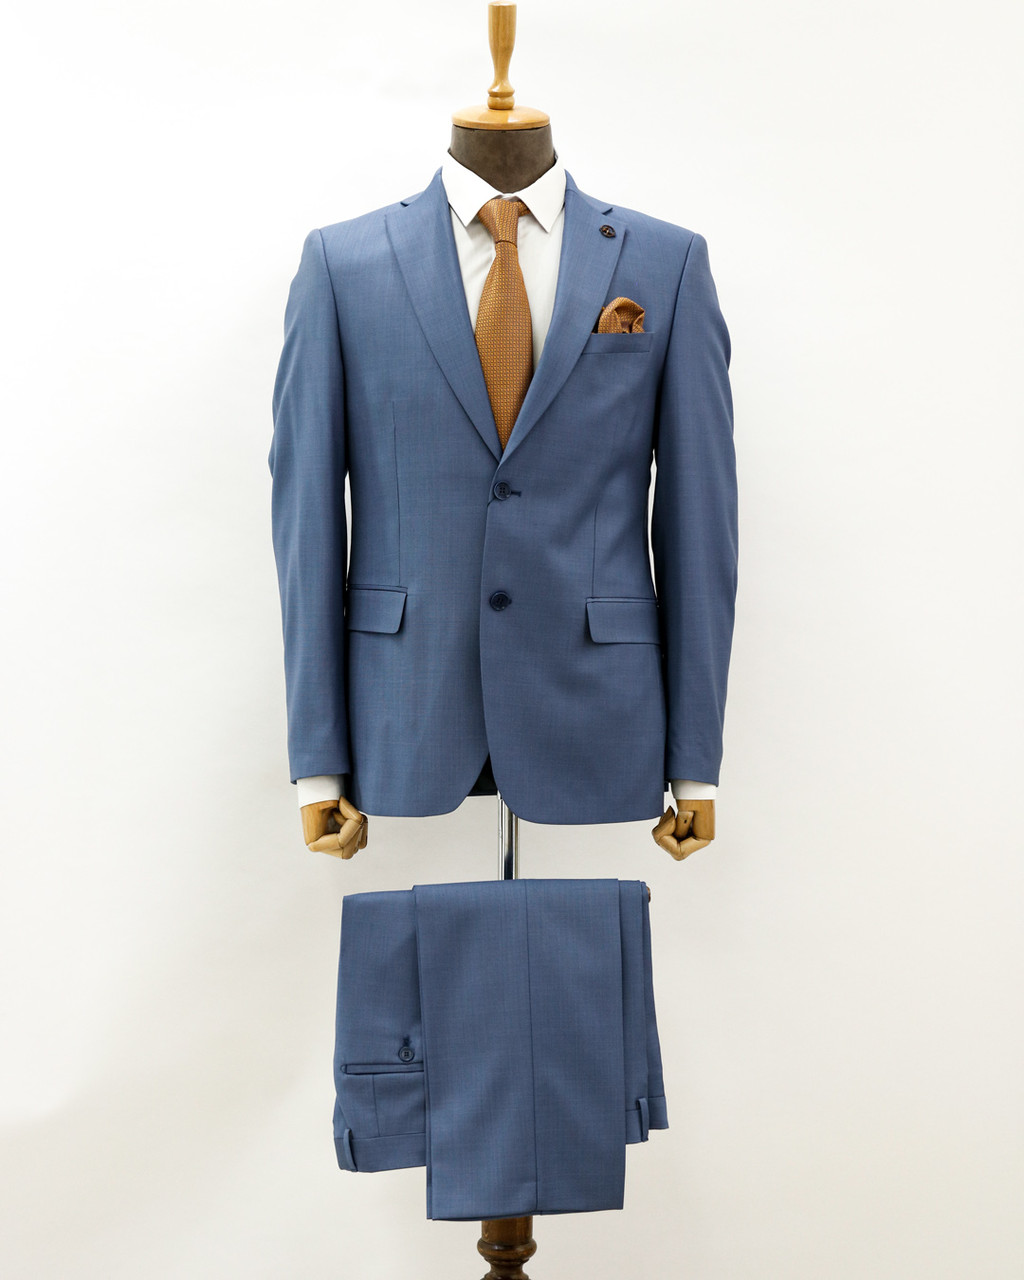 Мужской деловой костюм «UM&H 43757167» голубой, фото 1